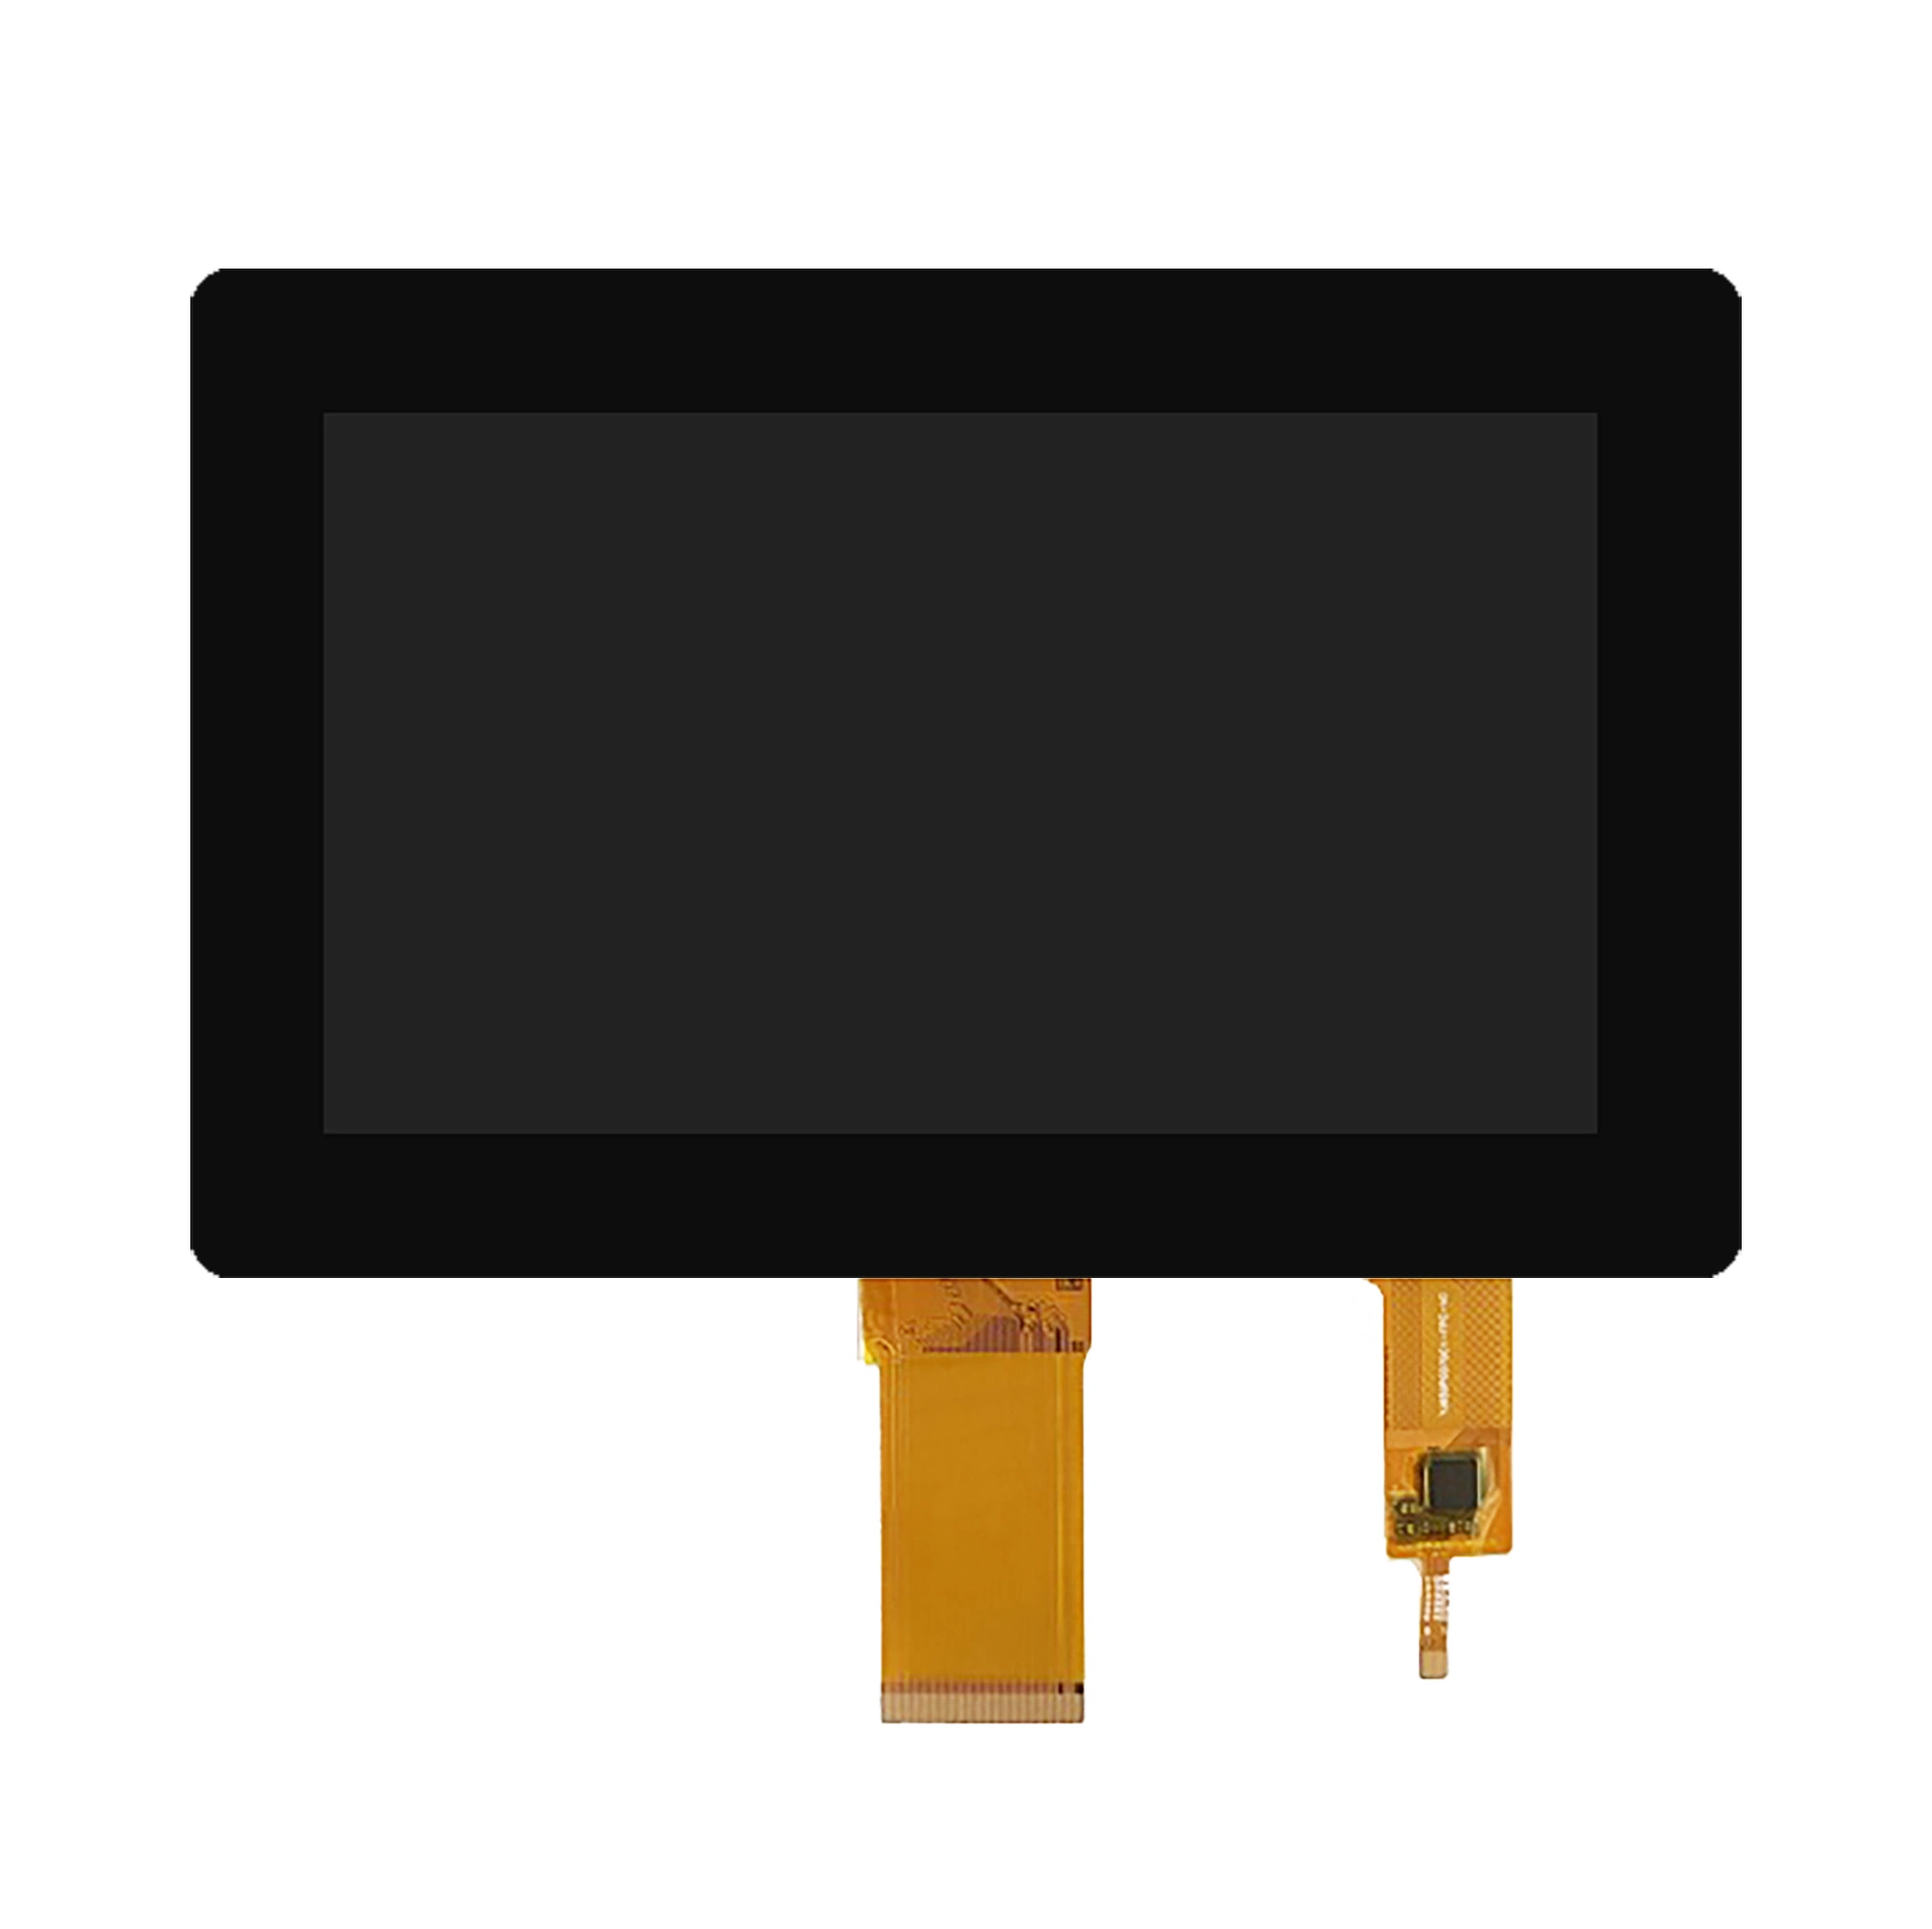 Fixation optique écran Multi-Touch capacitif 7.0 pouces 8.0 pouces 9.0 pouces 10.1 pouces 10.4 pouces 15.6 pouces, pour module d'affichage LCD